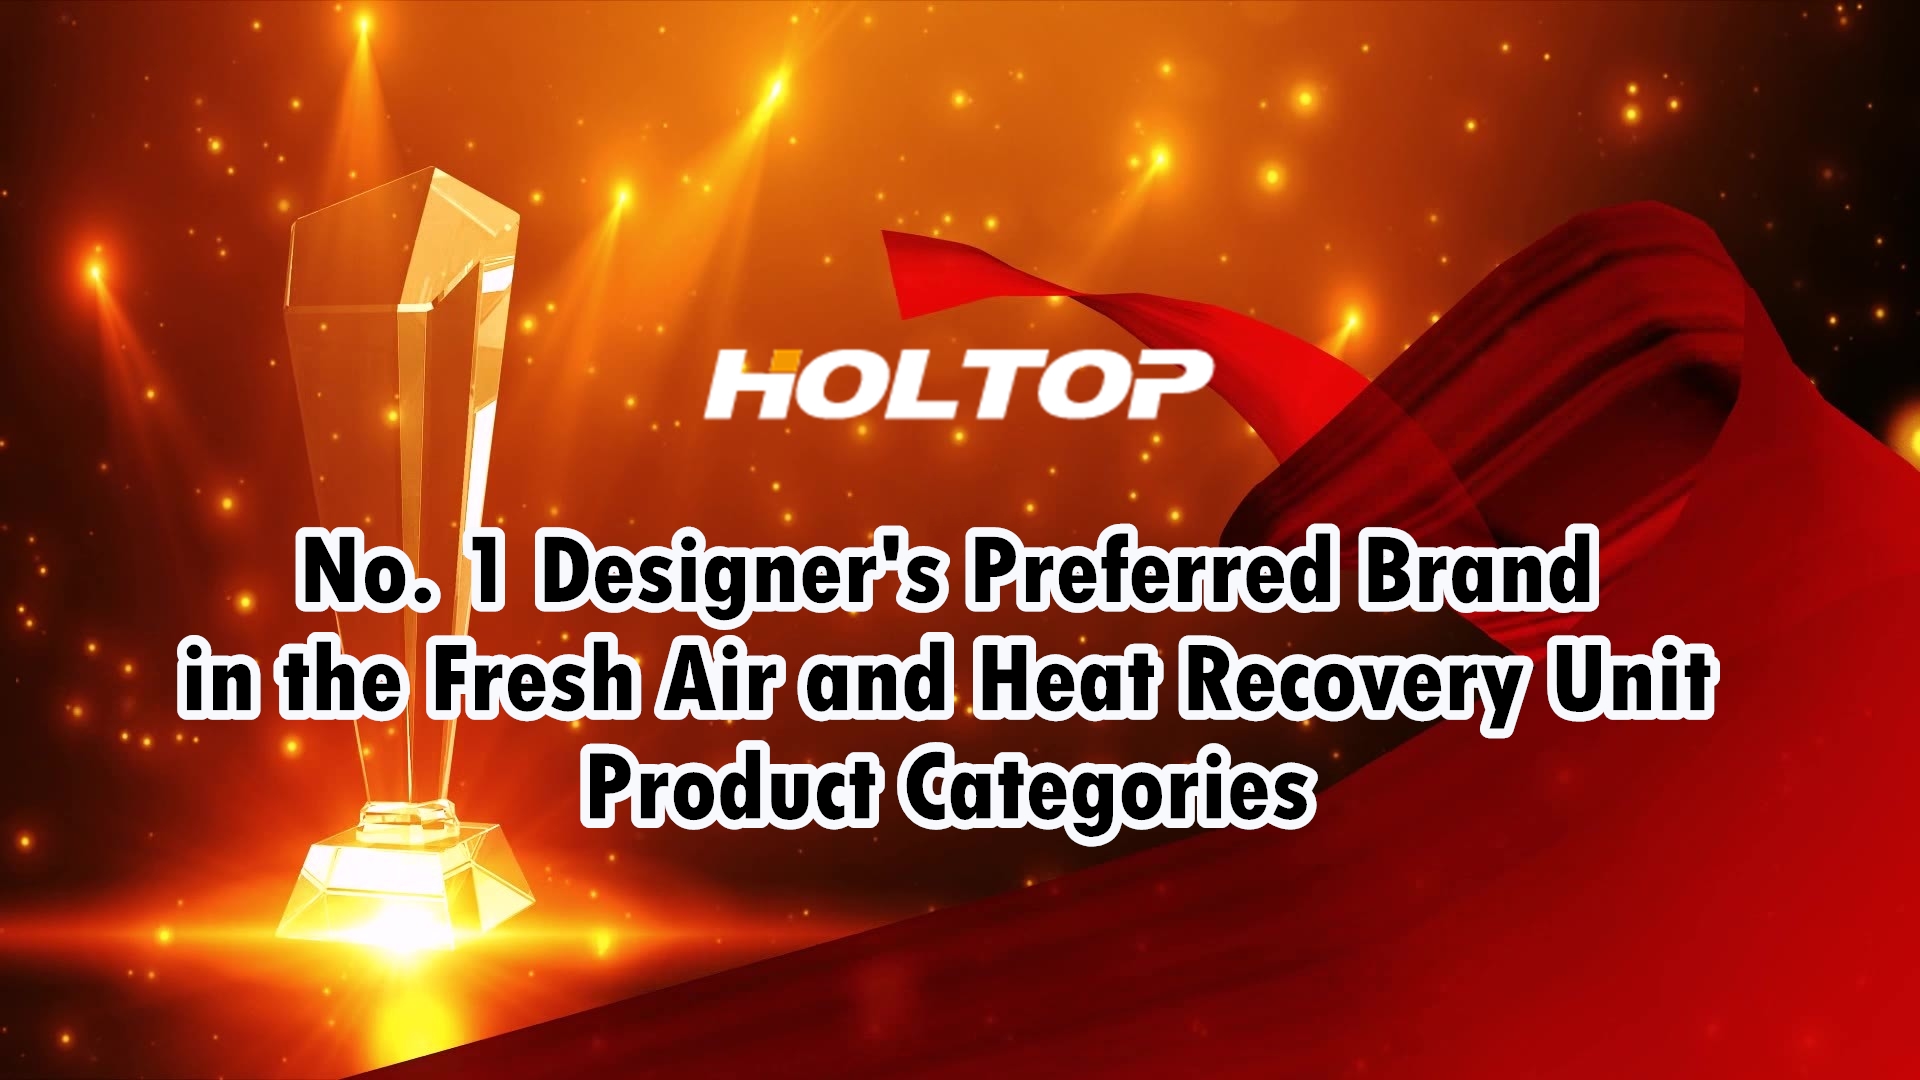 HOLTOP ist die bevorzugte Designermarke Nr. 1 in den Produktkategorien Frischluft- und Wärmerückgewinnungsgeräte auf dem chinesischen Markt